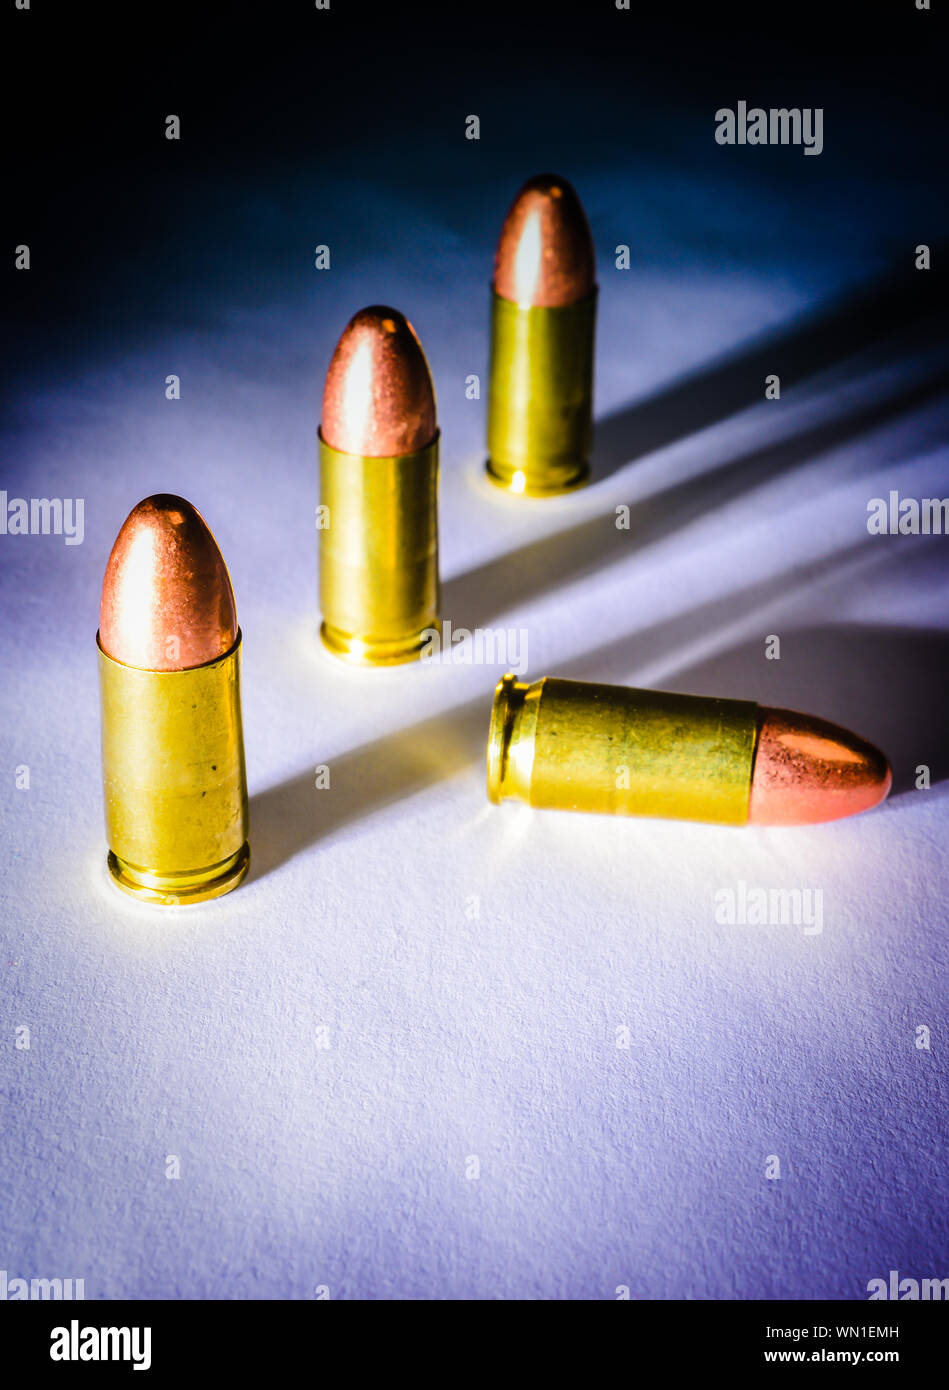 Drei ständigen 9 mm Kugeln neben einem gefallenen bullet mit dramatischen Seite Licht, Schatten und Farbe Stockfoto